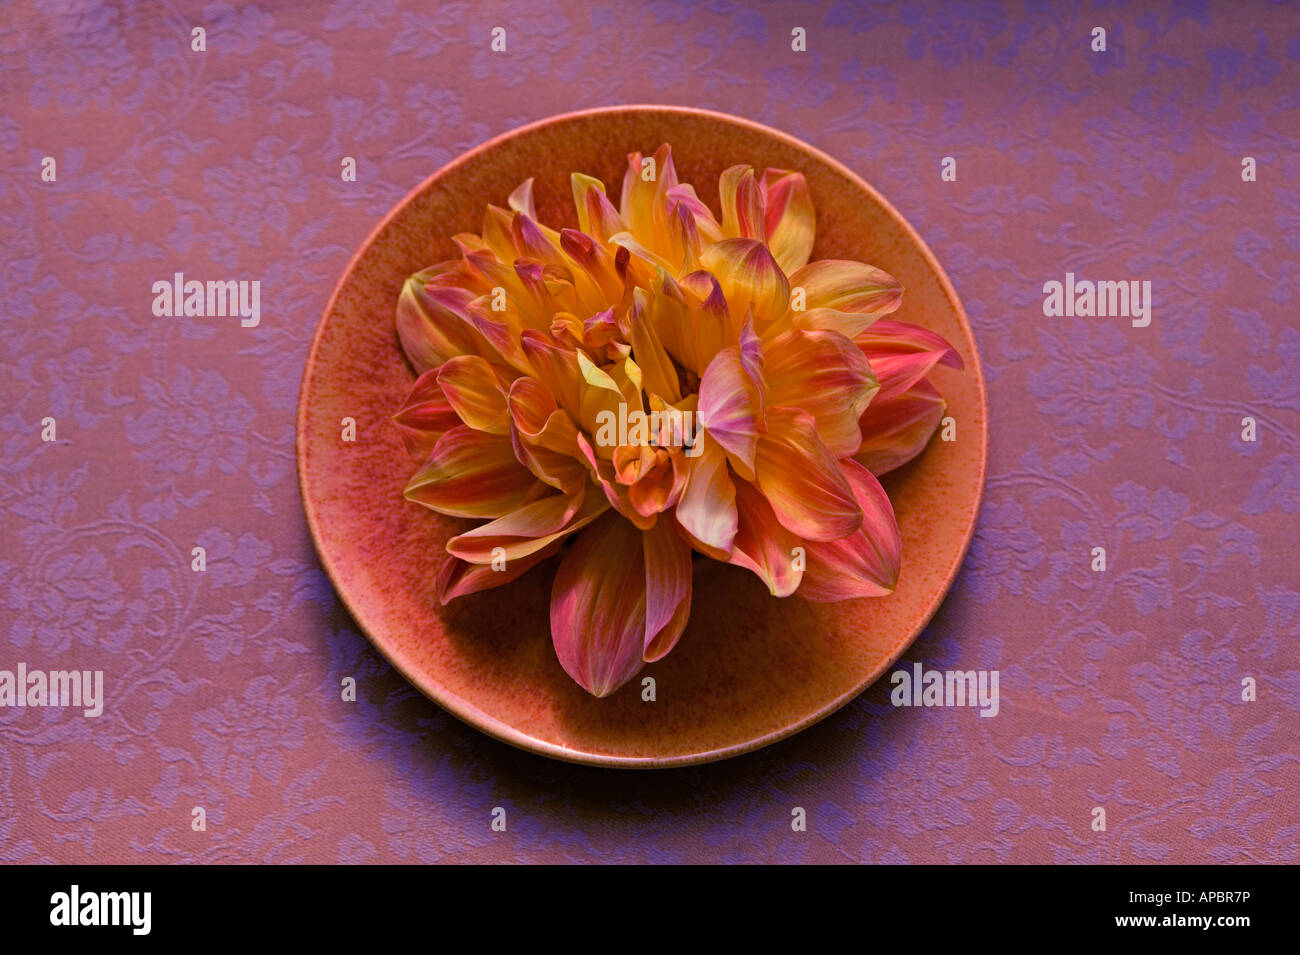 Dalia flor amarilla en la placa bodegón púrpura círculo naranja simple pétalos de flores delicadas Foto de stock